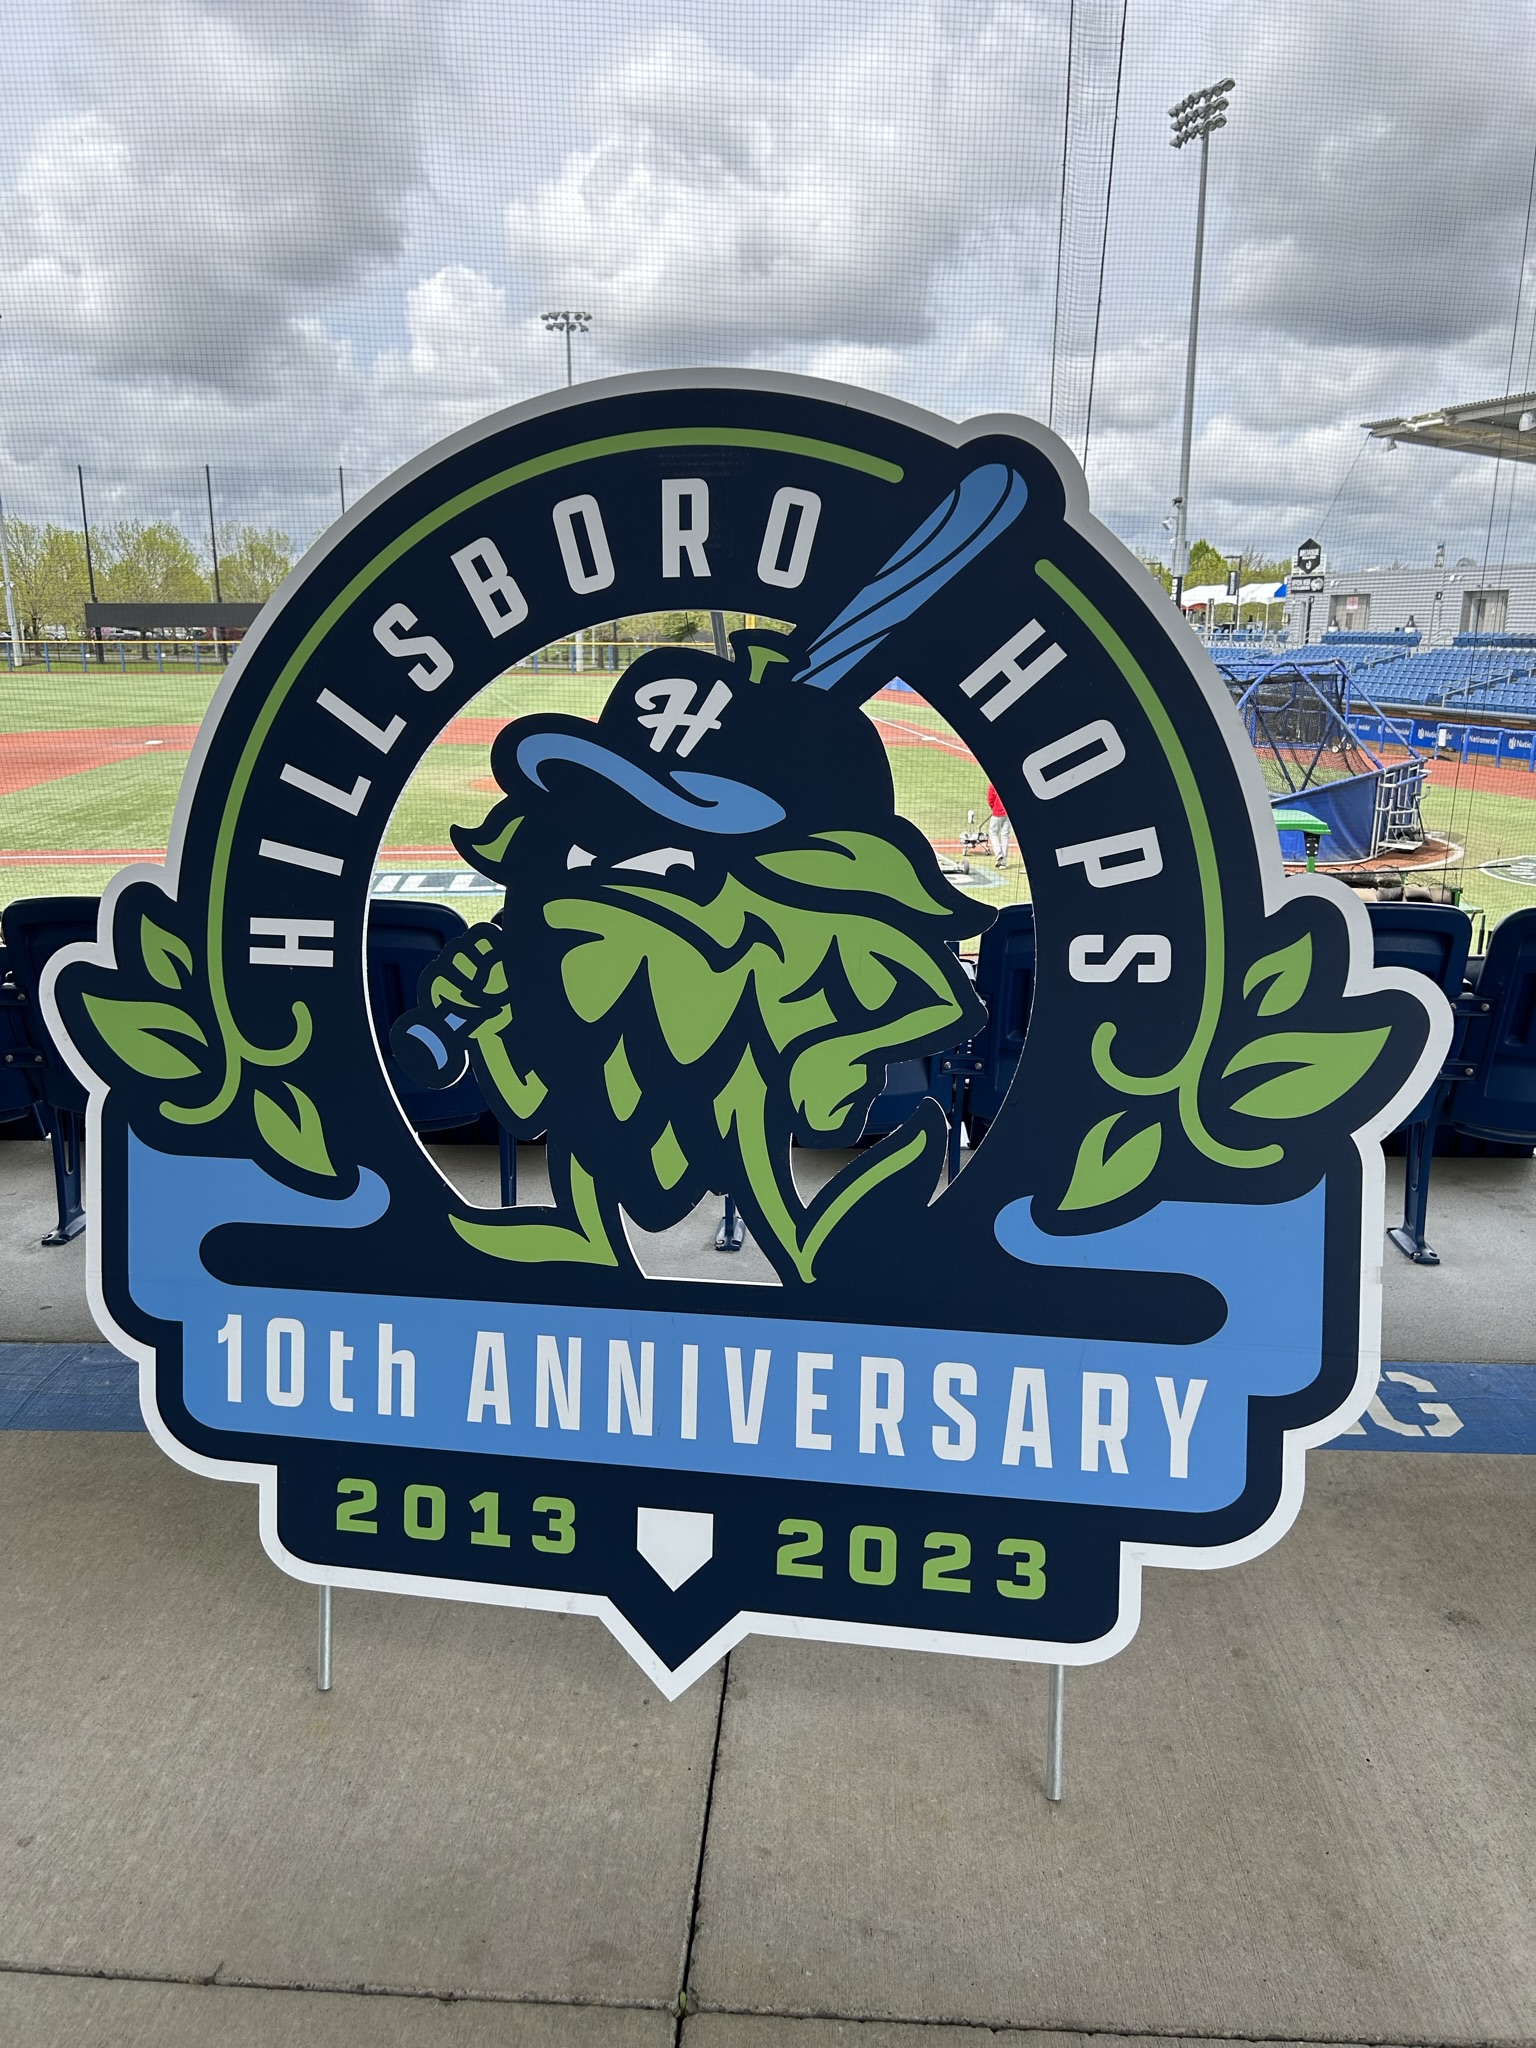 Hillsboro's 10th anniversary logo